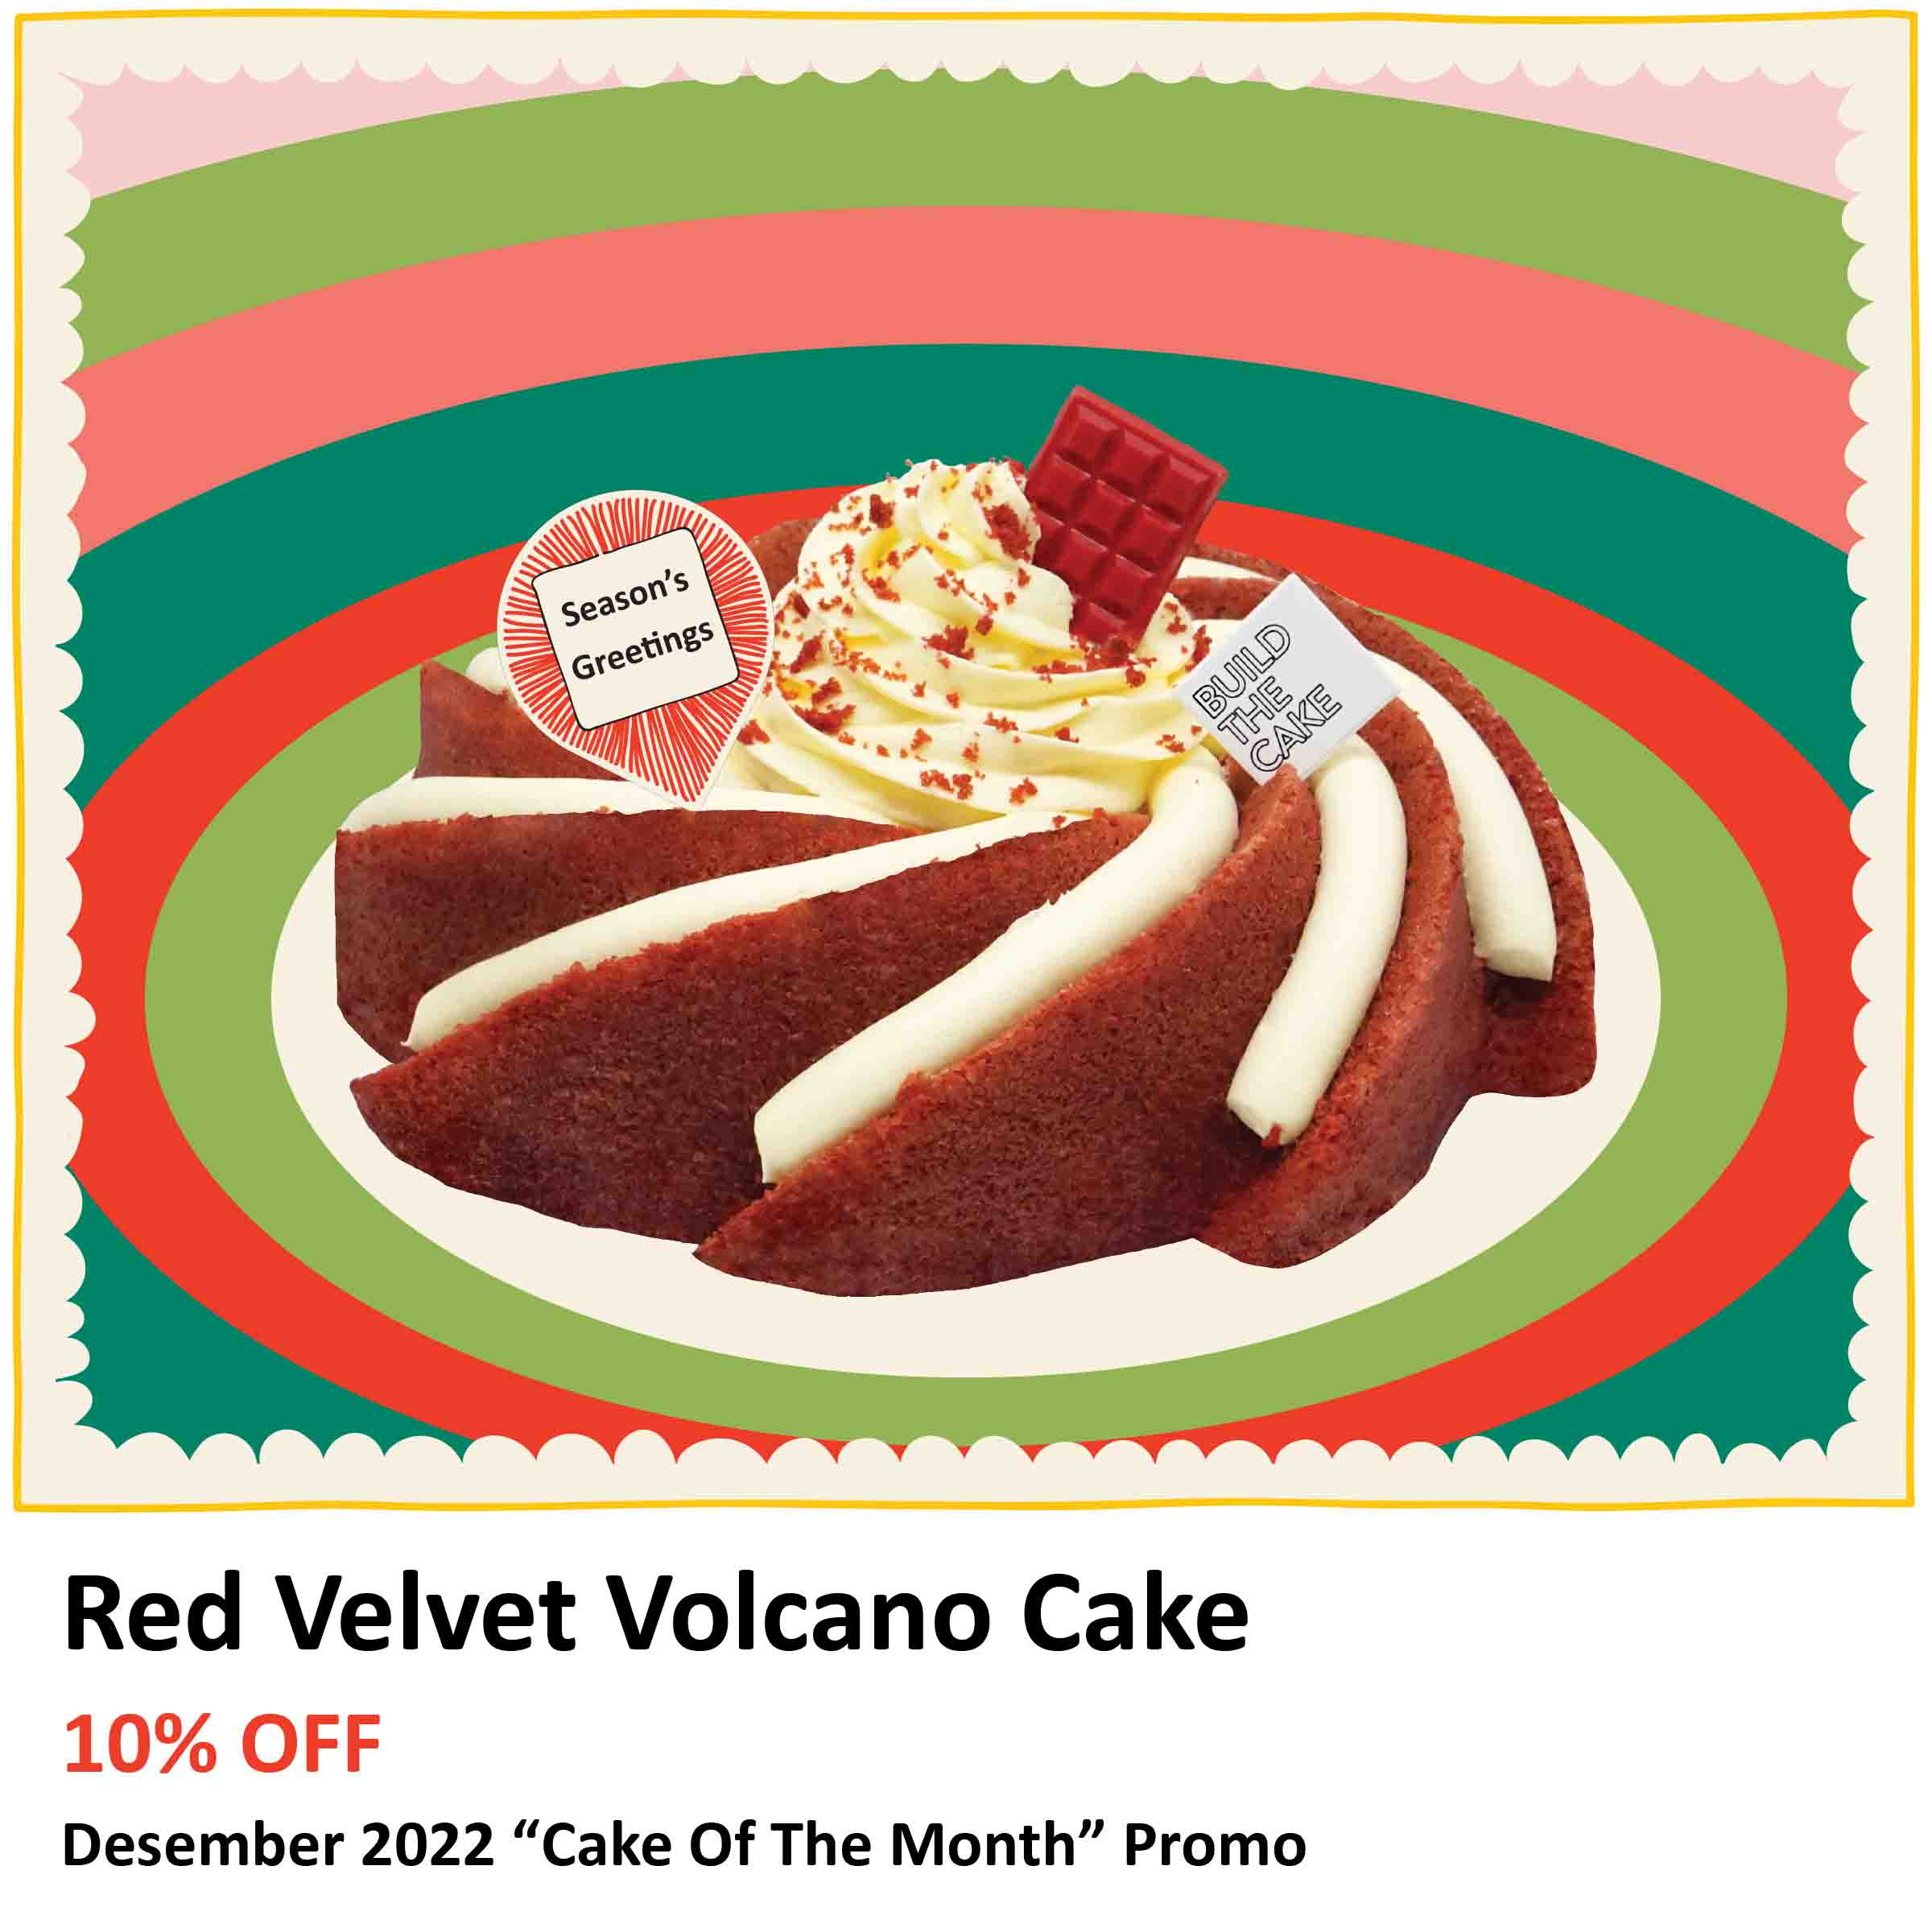 Red Velvet Volcano Cake